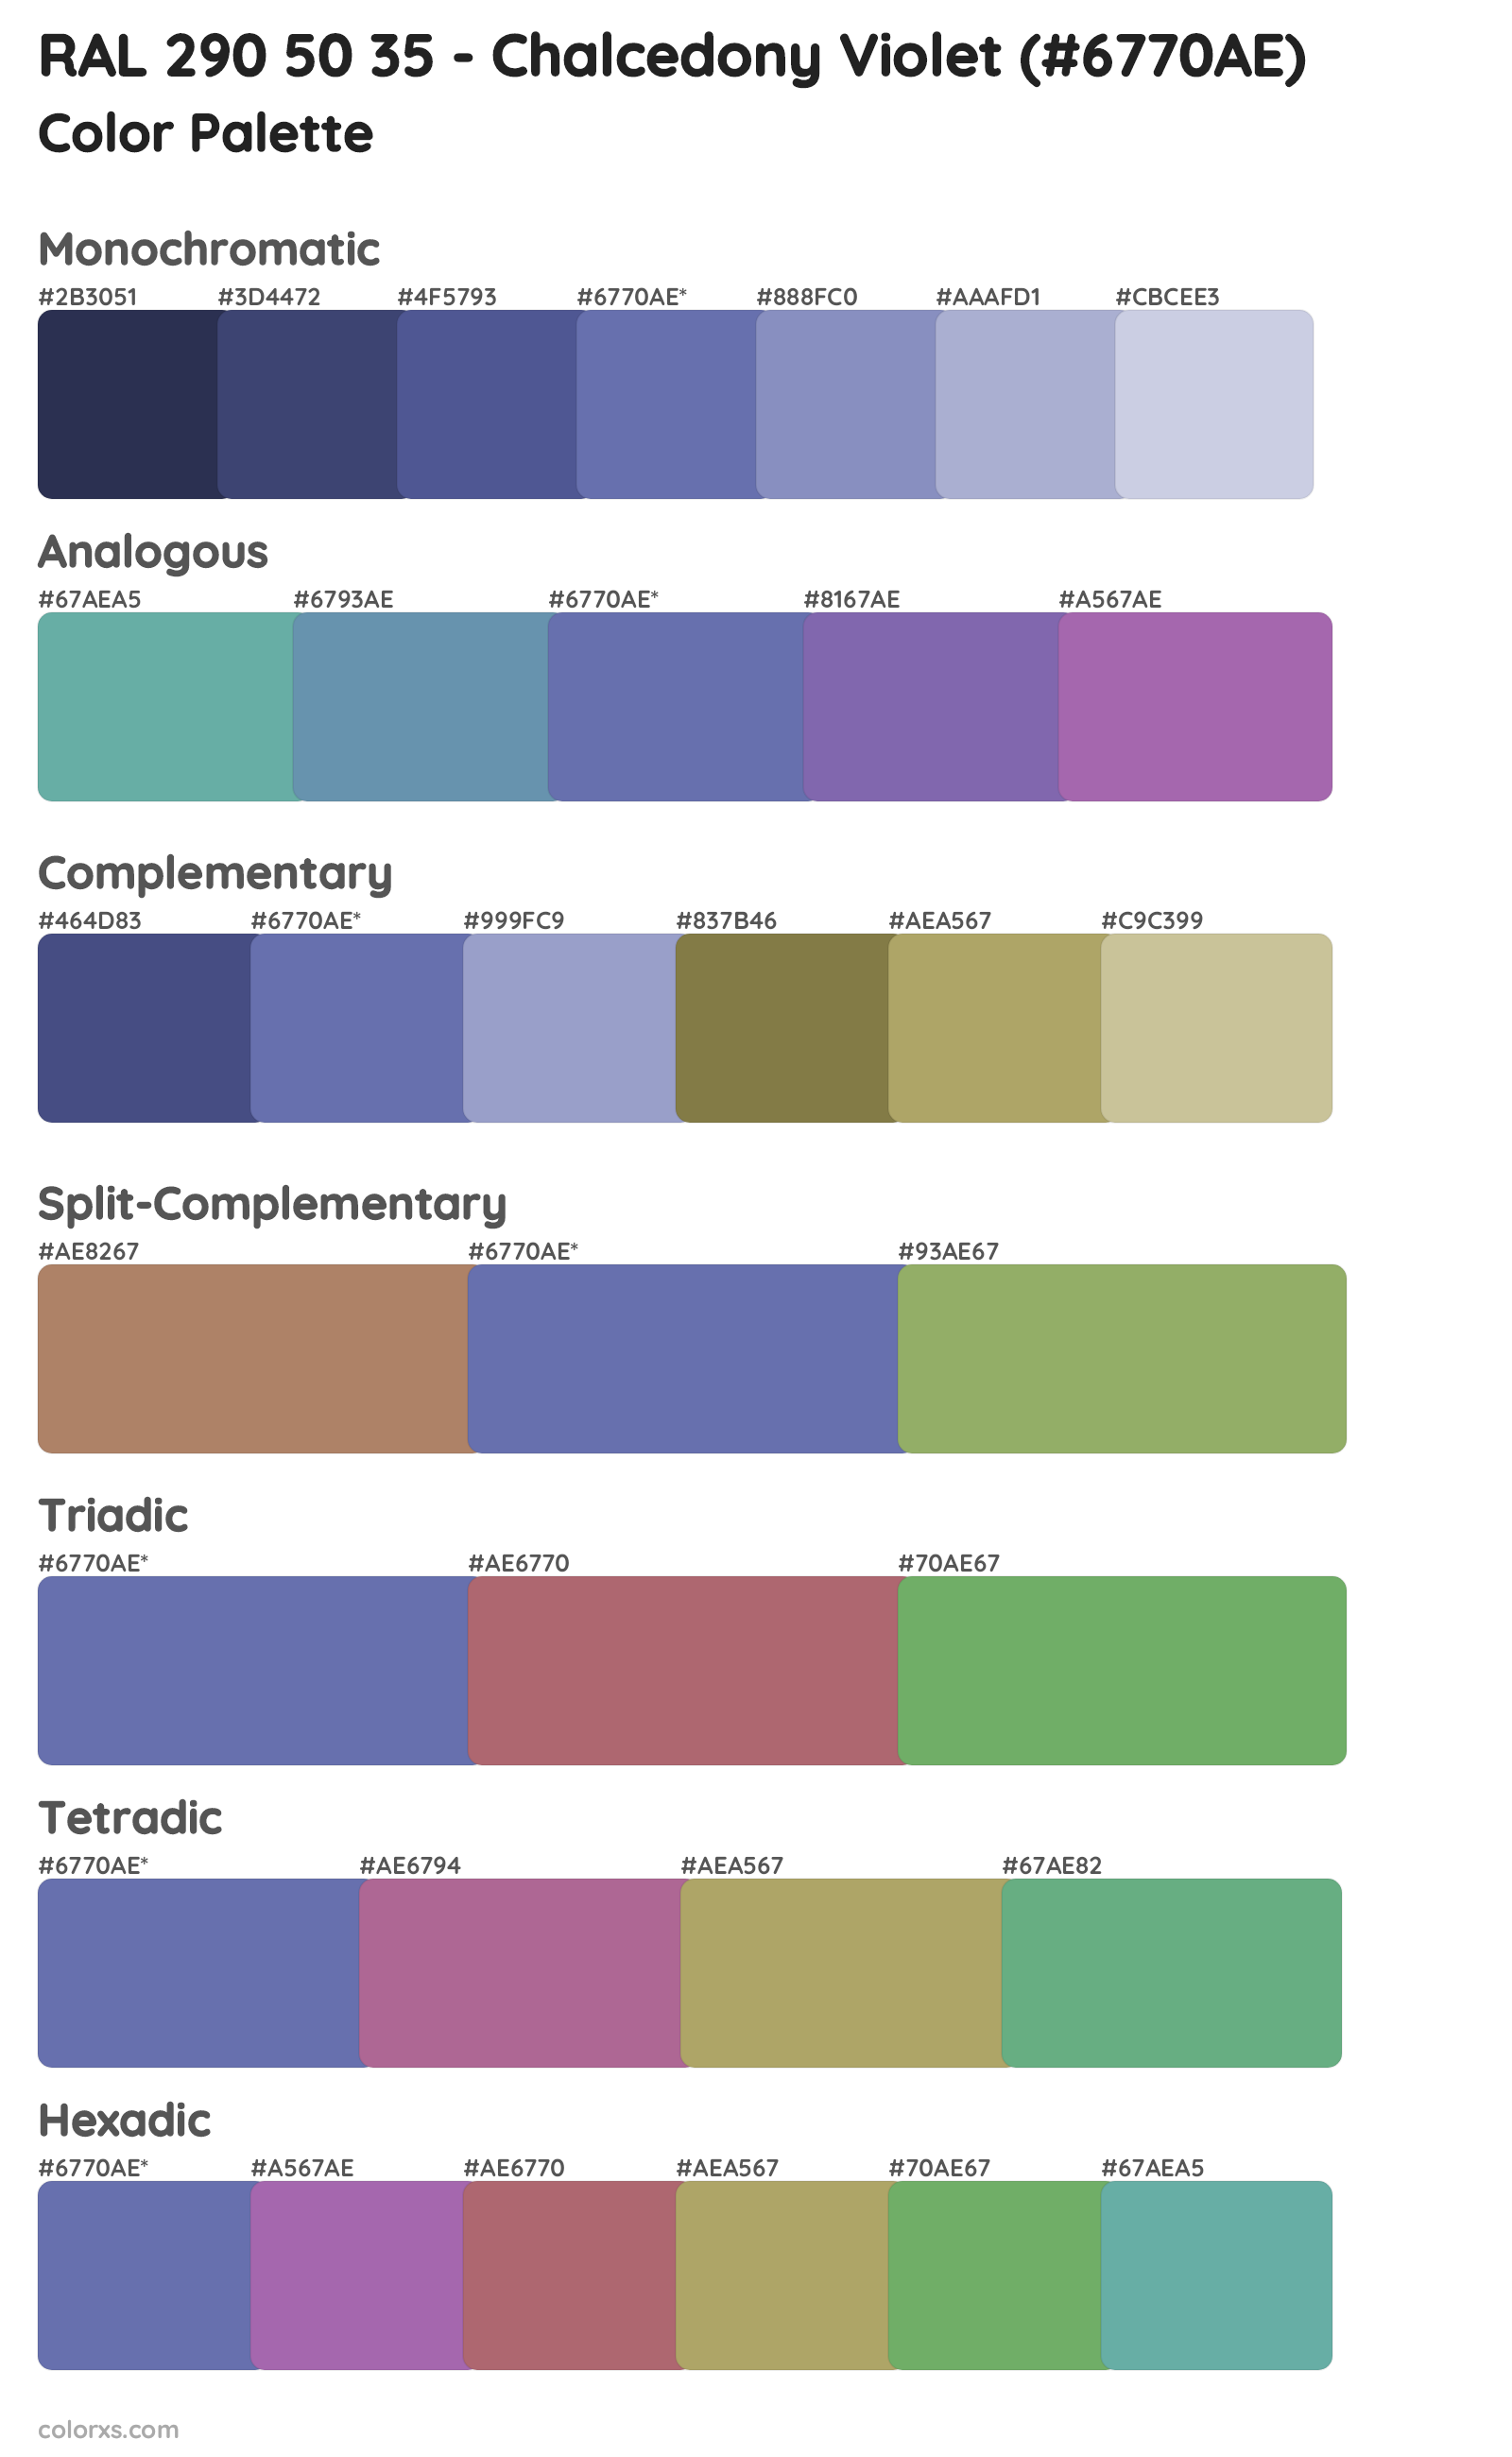 RAL 290 50 35 - Chalcedony Violet Color Scheme Palettes